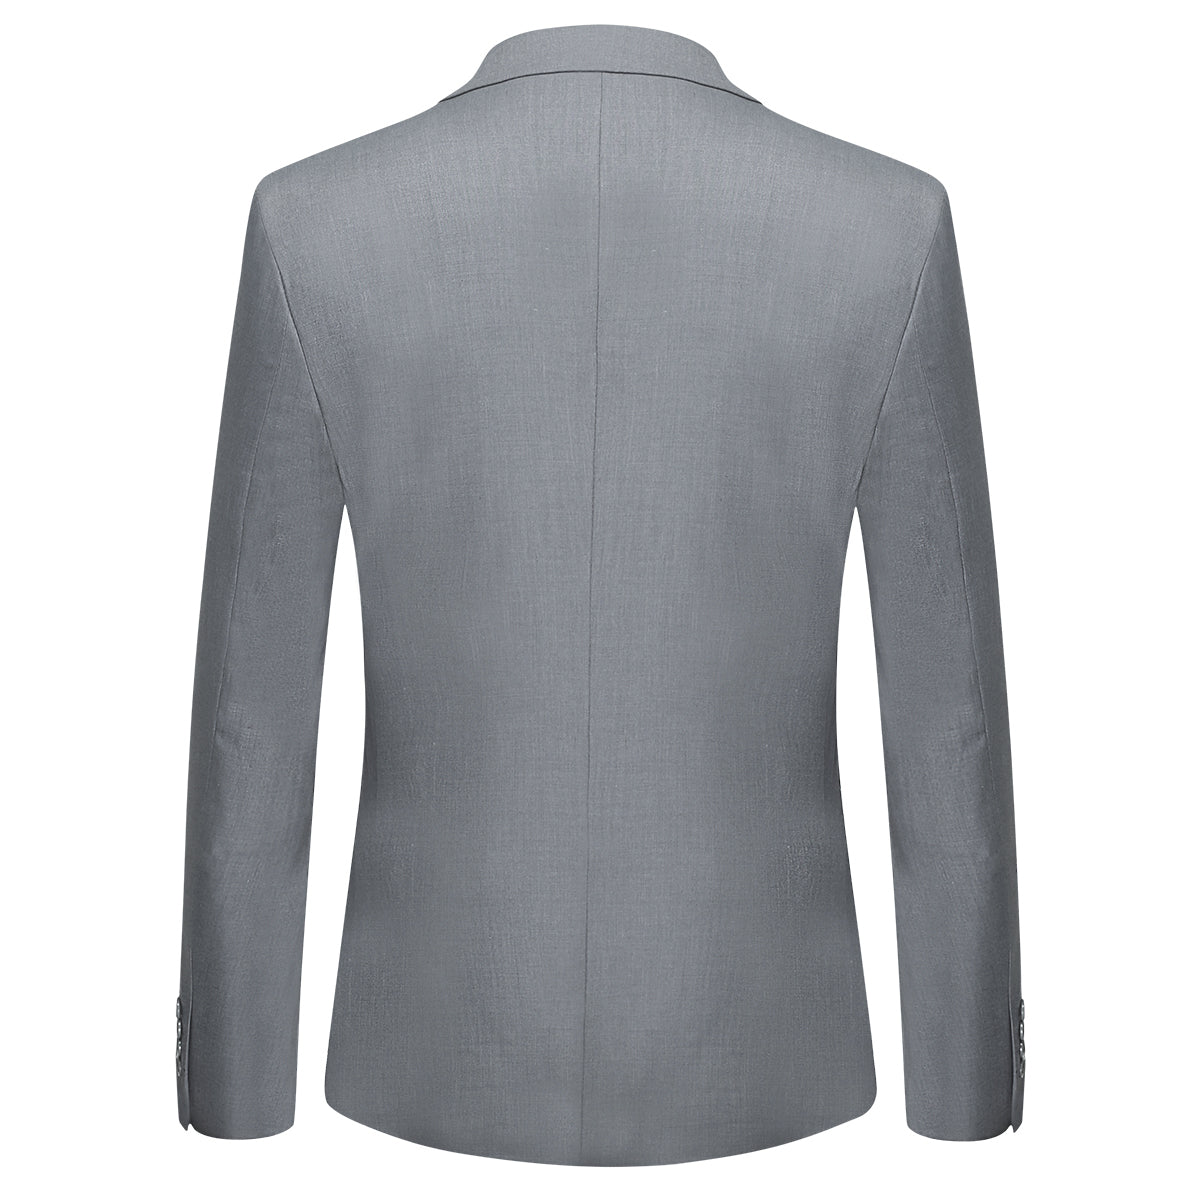 Mens 2-Piece Slim Fit Two Button Light Grey Suit